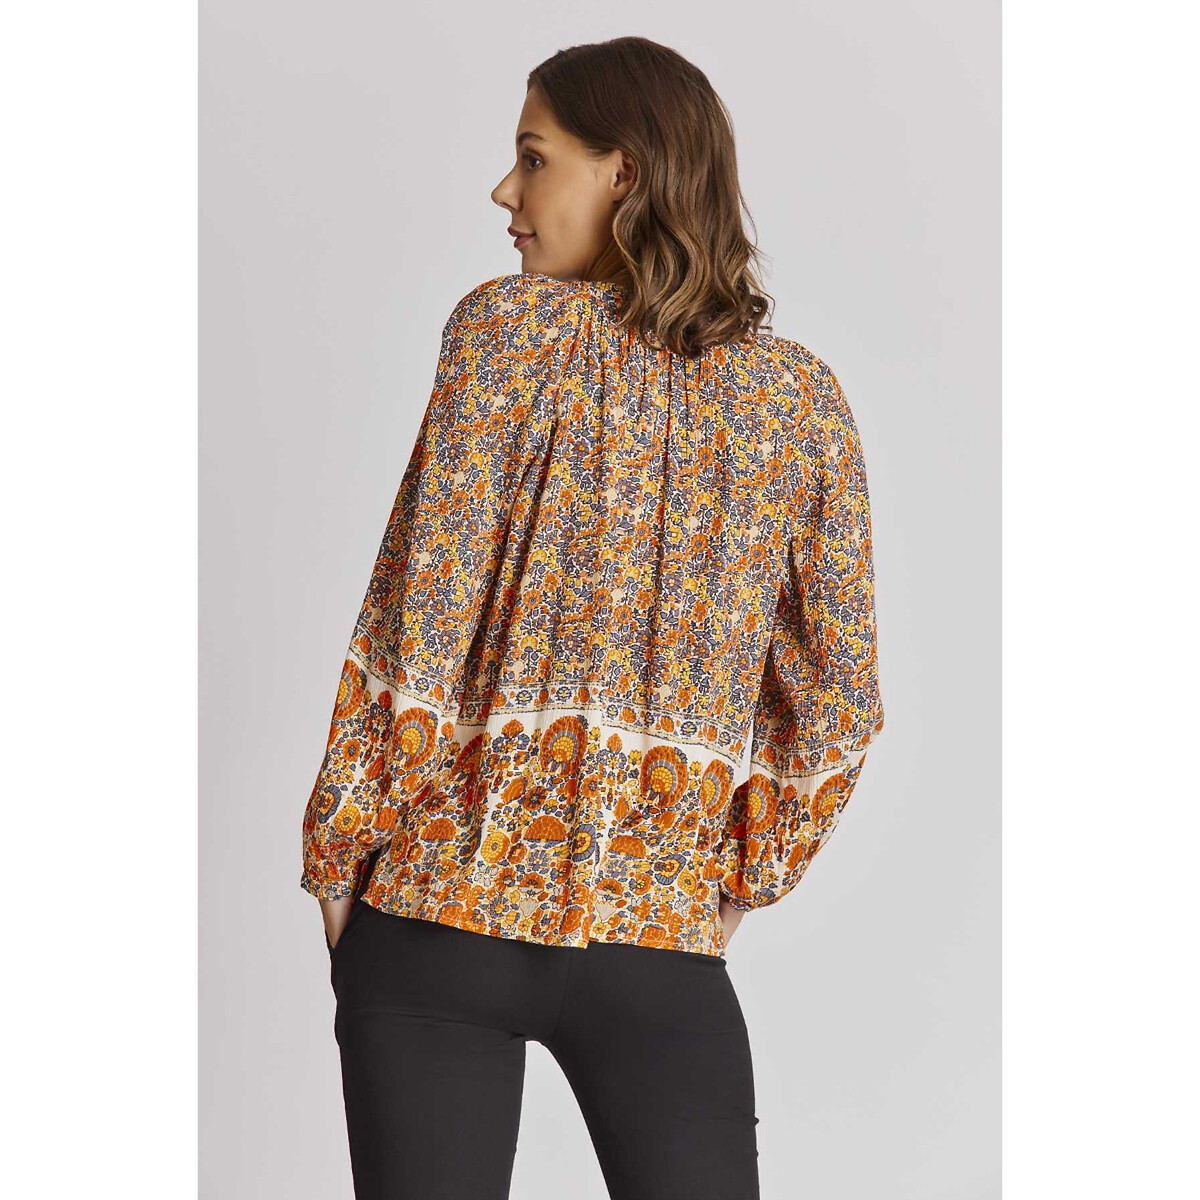 Блузка DERHY Свободного покроя с цветочным принтом Dea L оранжевый, размер L - фото 3